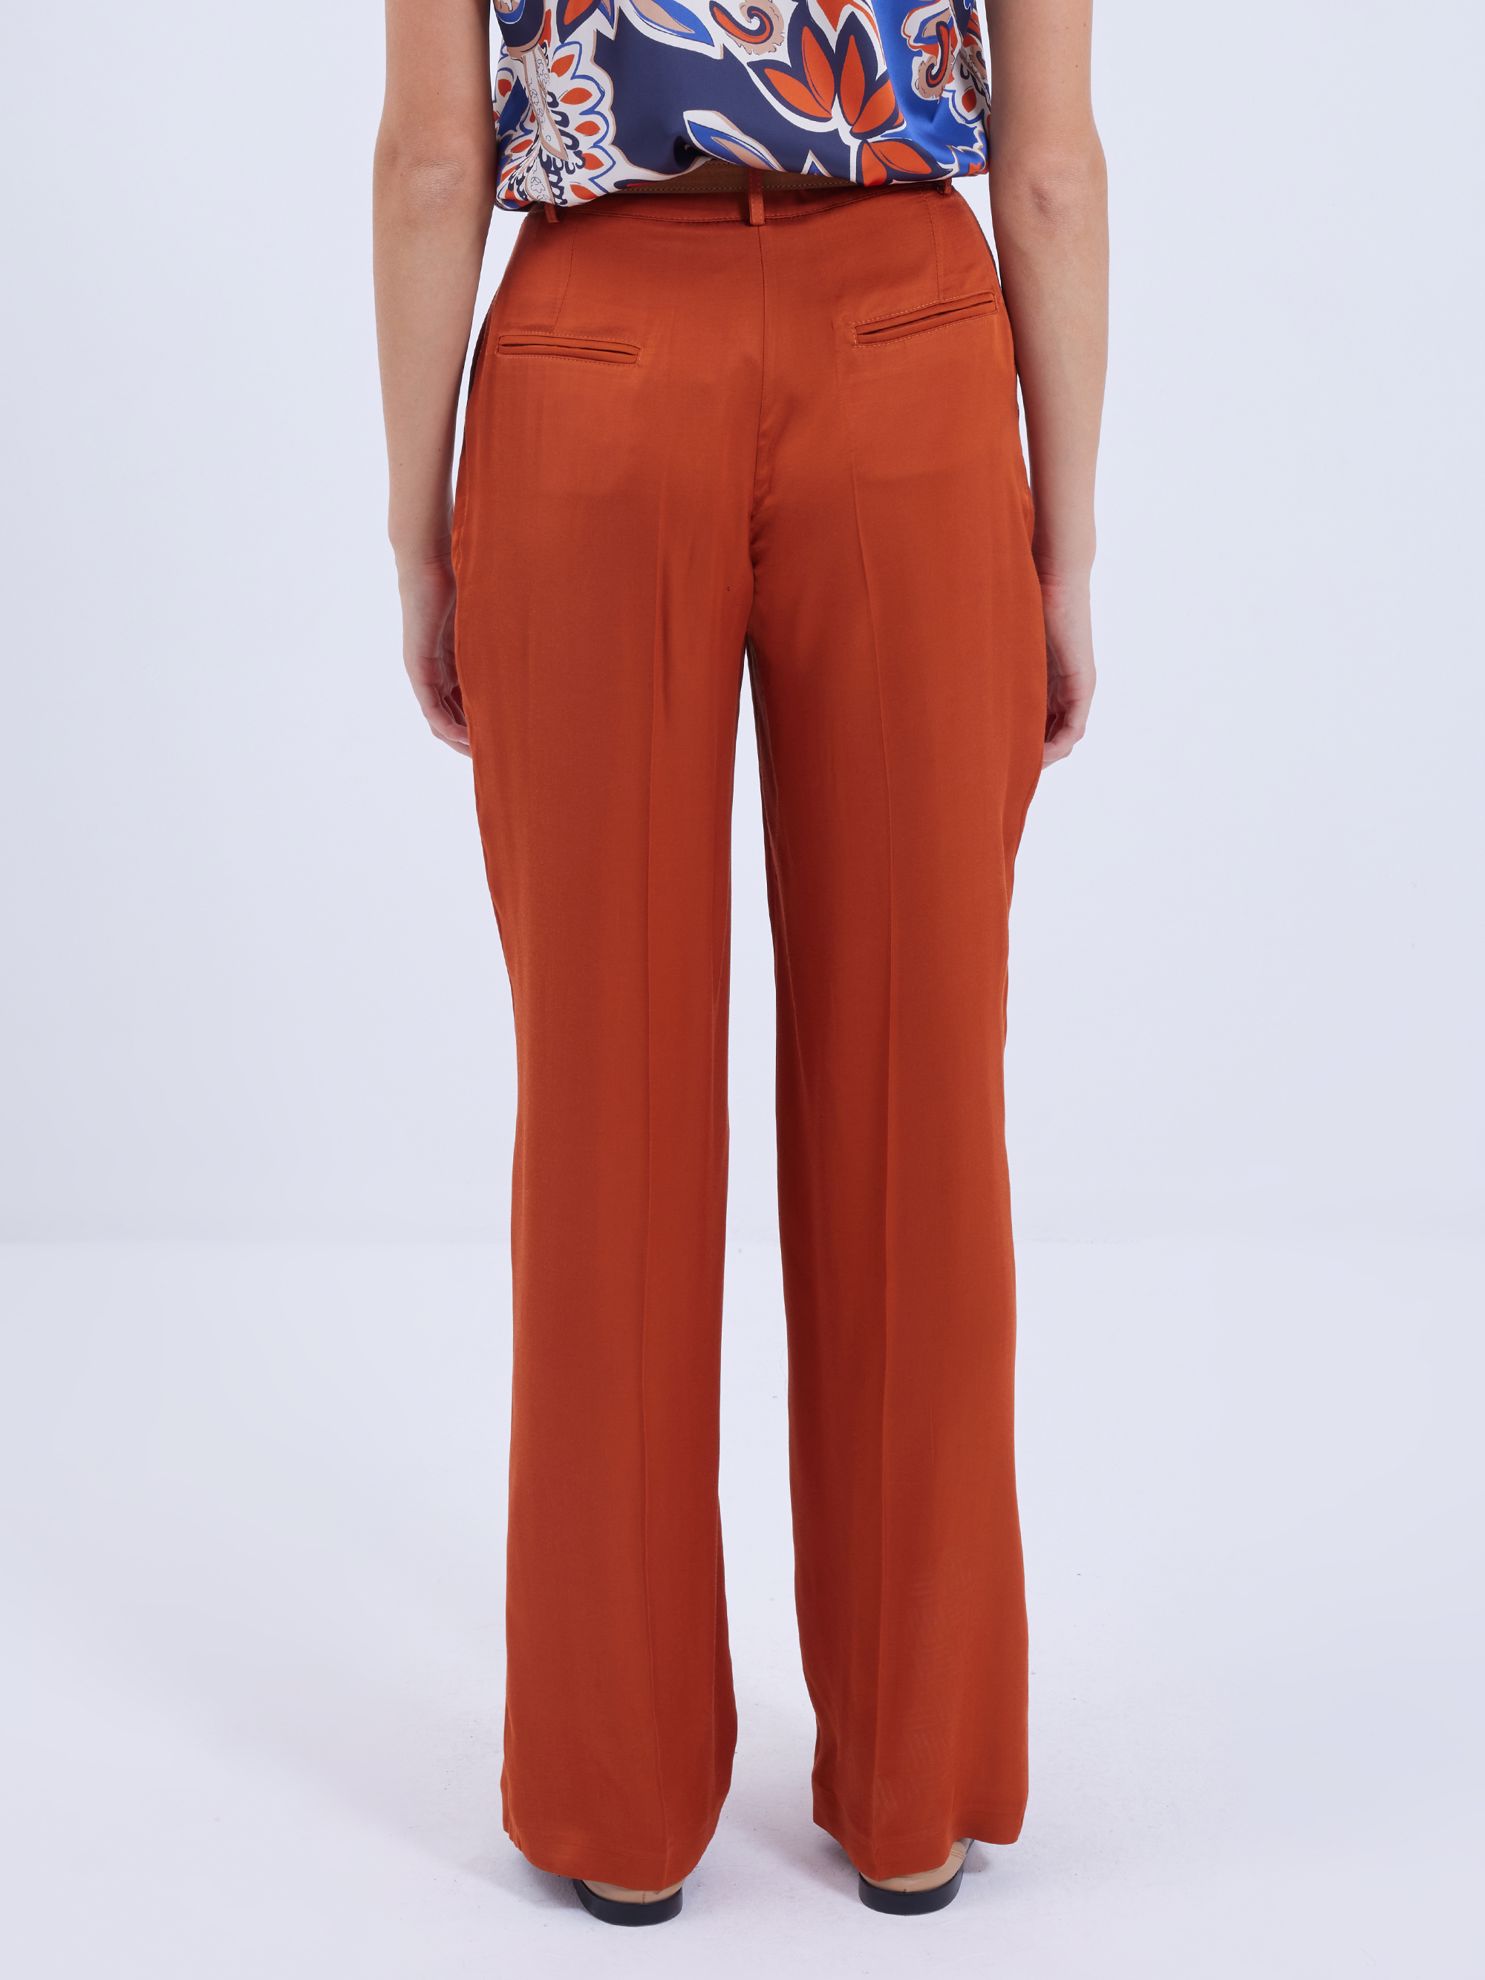 Karaca Kadın Pantolon-Kiremit. ürün görseli